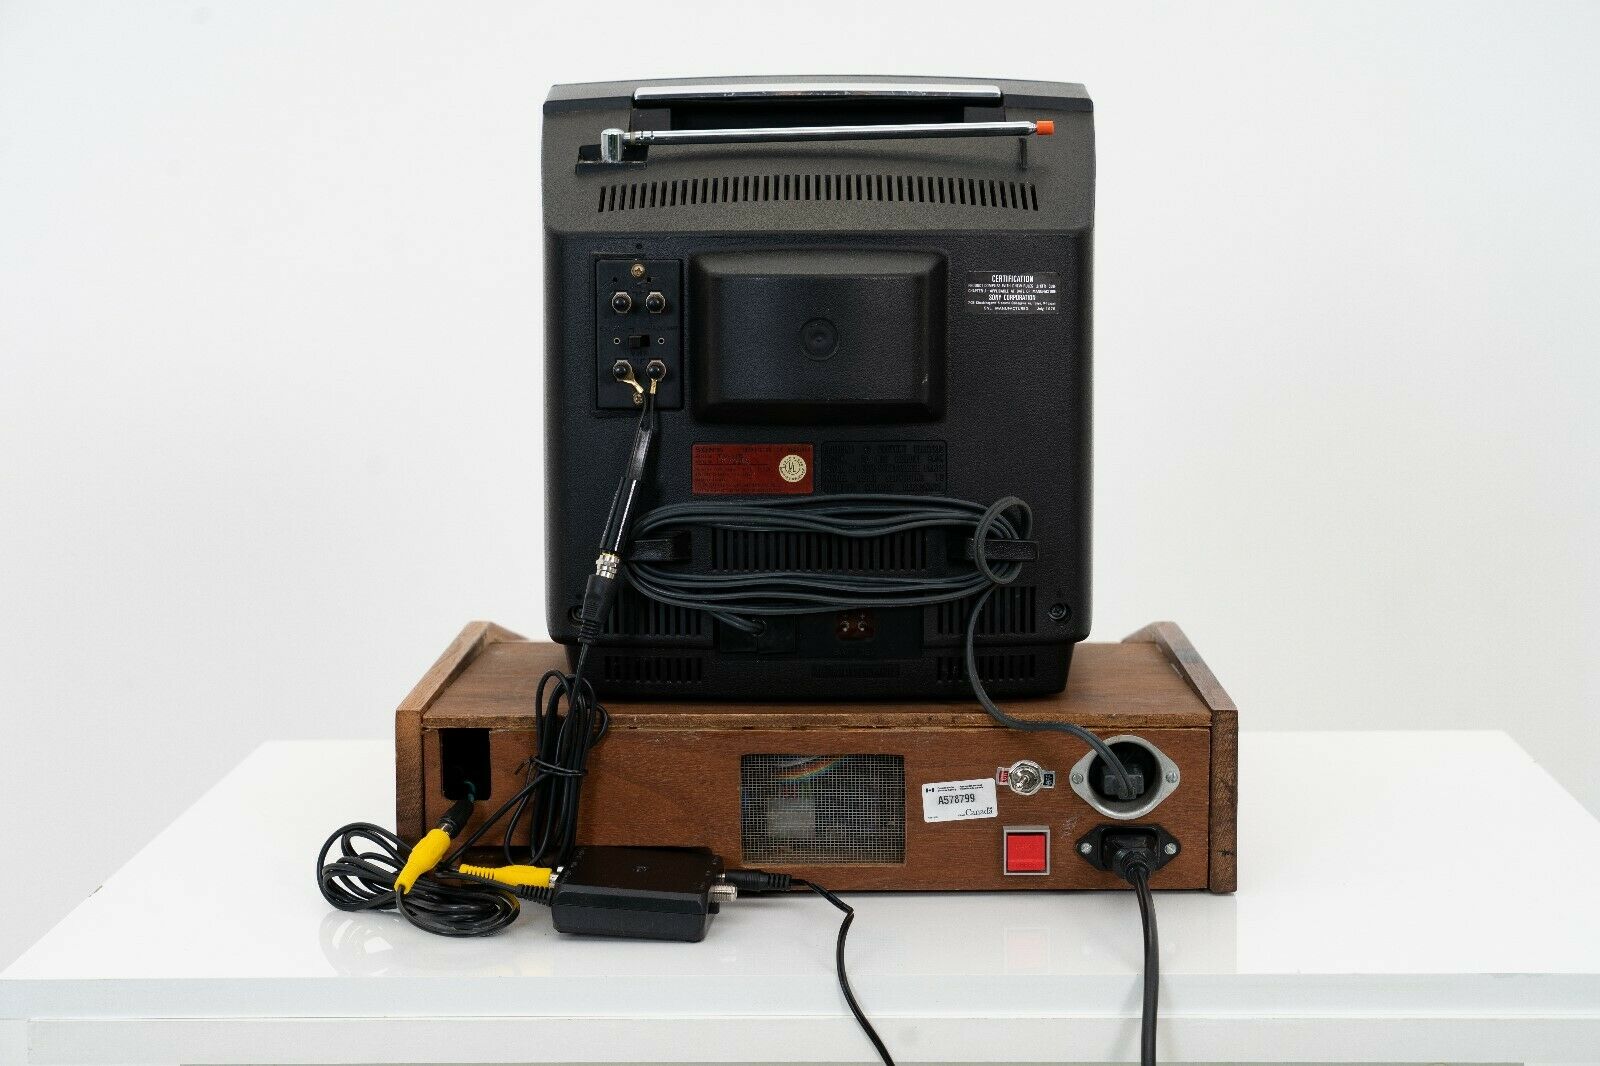 Оригинальный и полностью рабочий компьютер Apple I выпуска 1976 года впервые продают на eBay - 3